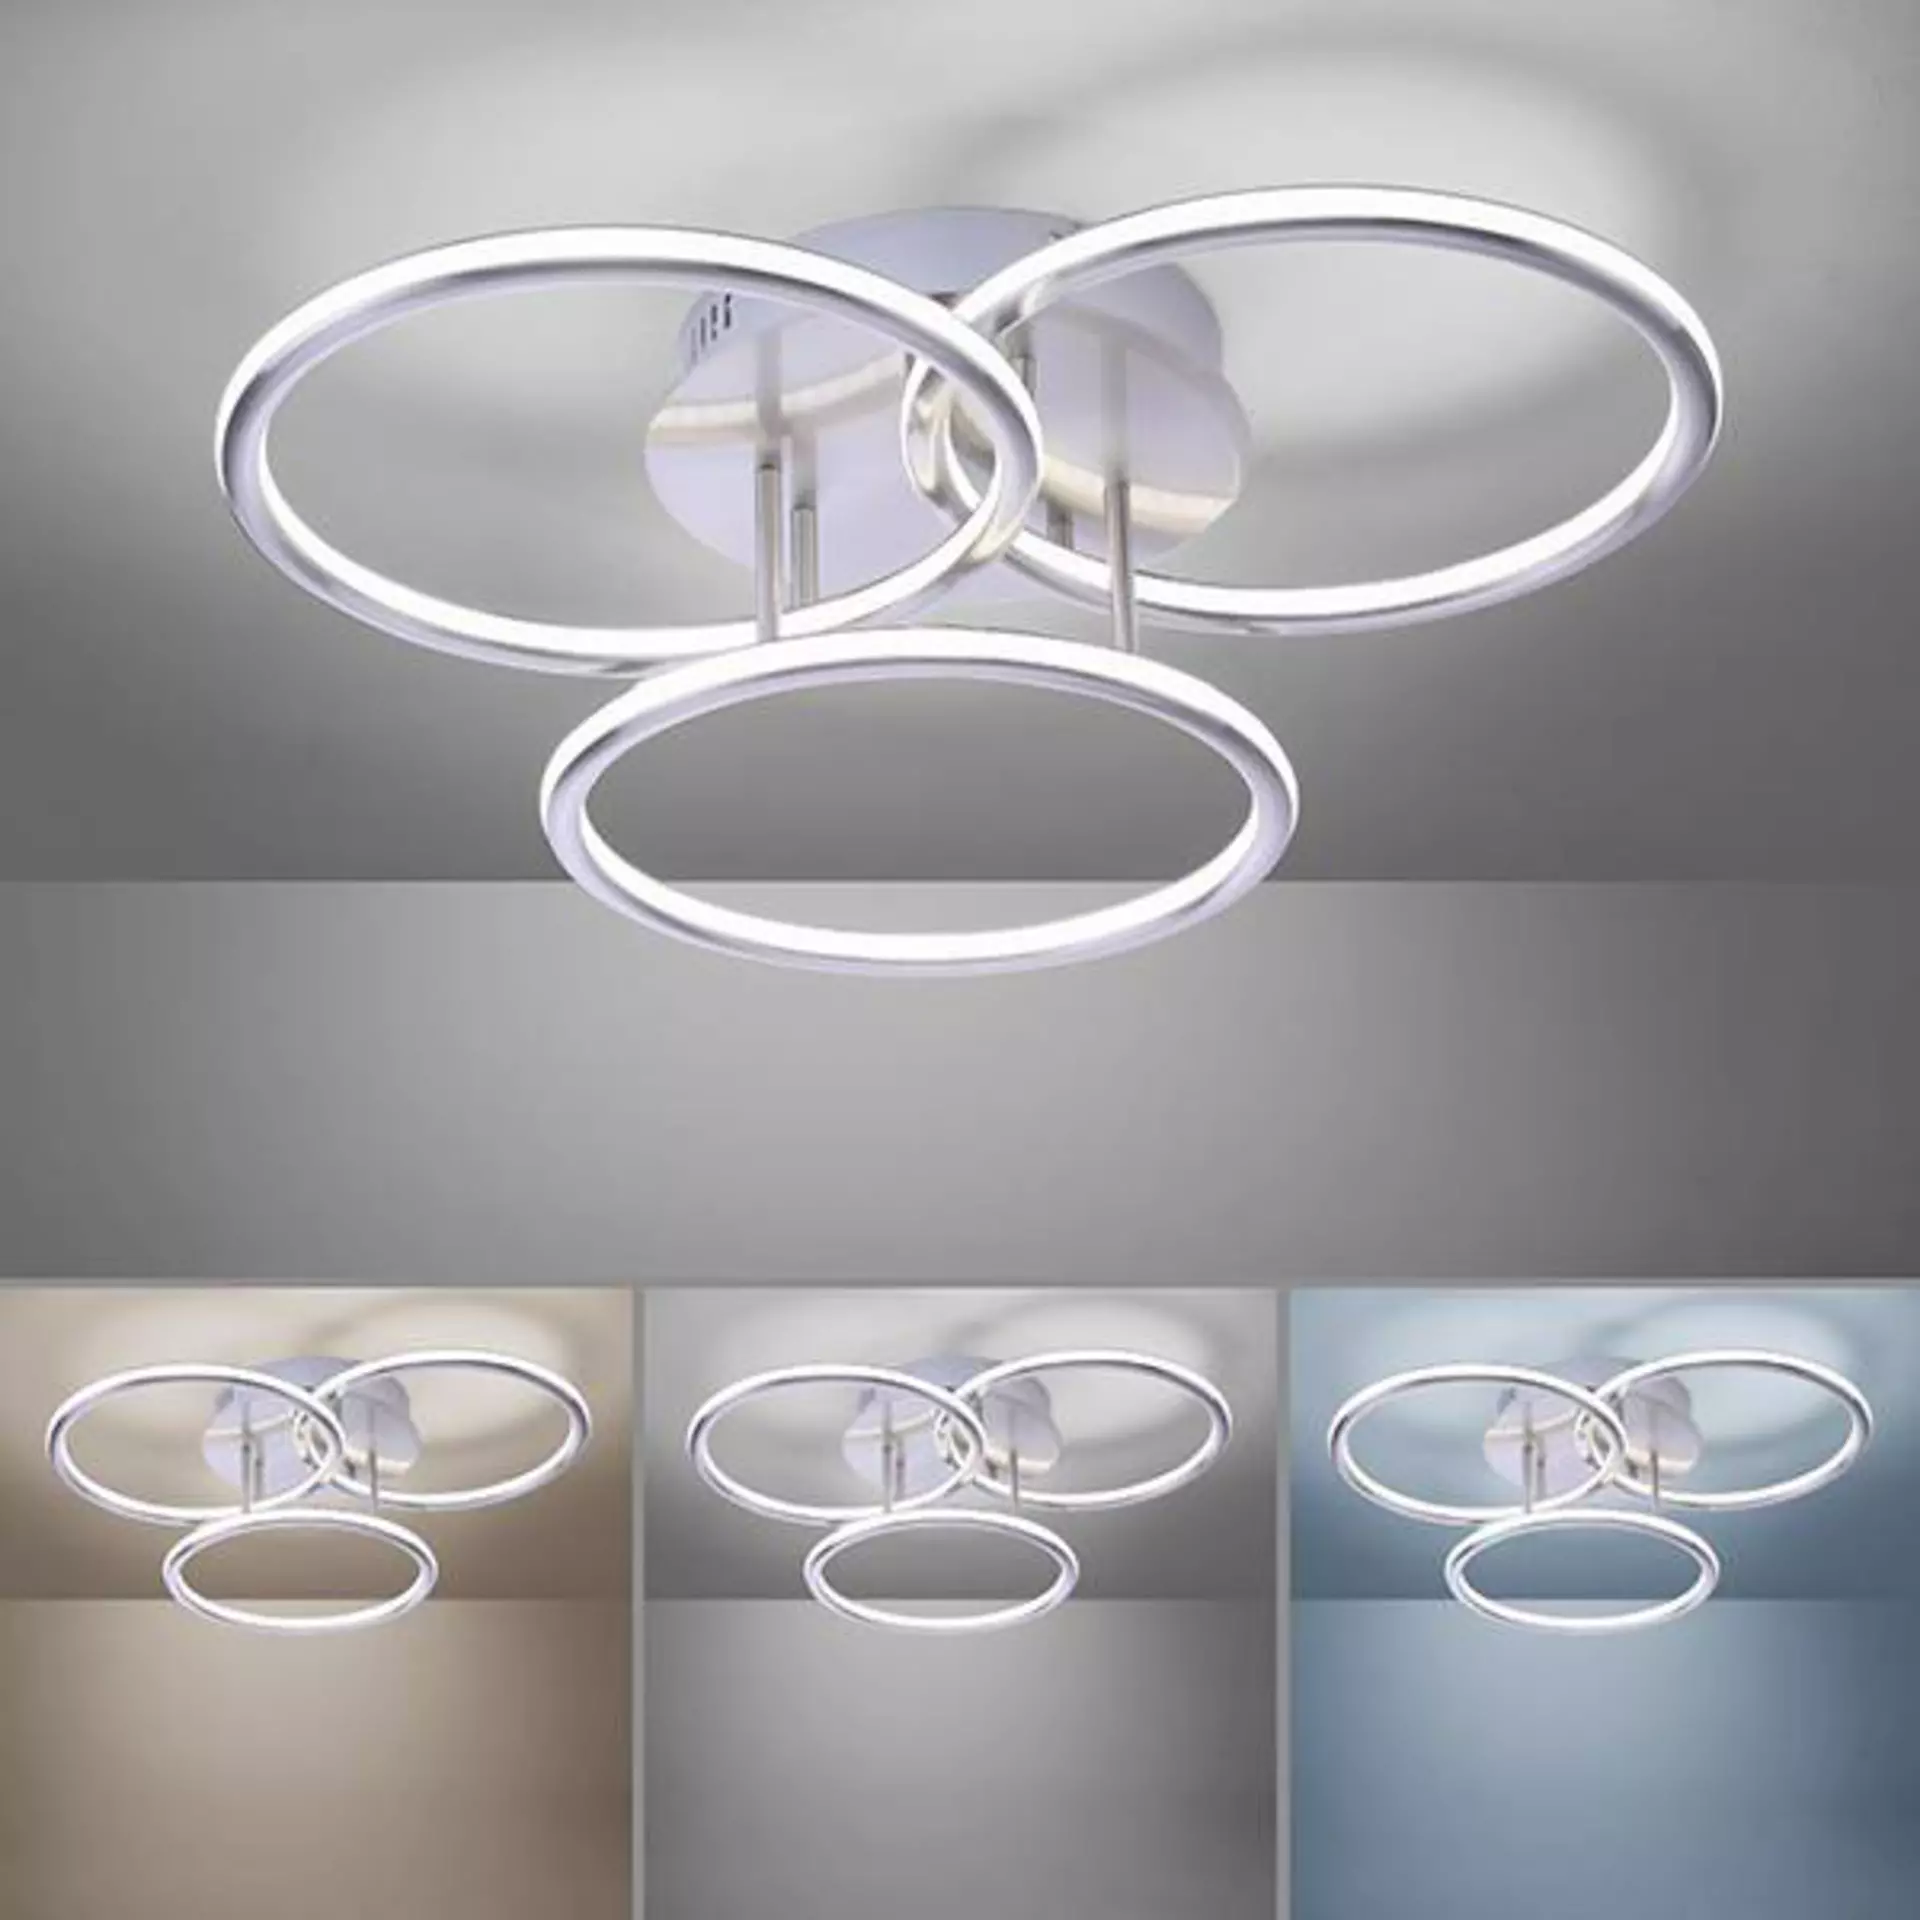 Hauptbild ist eine moderne Lampe aus drei Leuchtkreisen. Sie strahlt hell weiß. Darunter ist die gleiche Lampe kleiner in verschiedenen Leuchtfarben abgebildet.